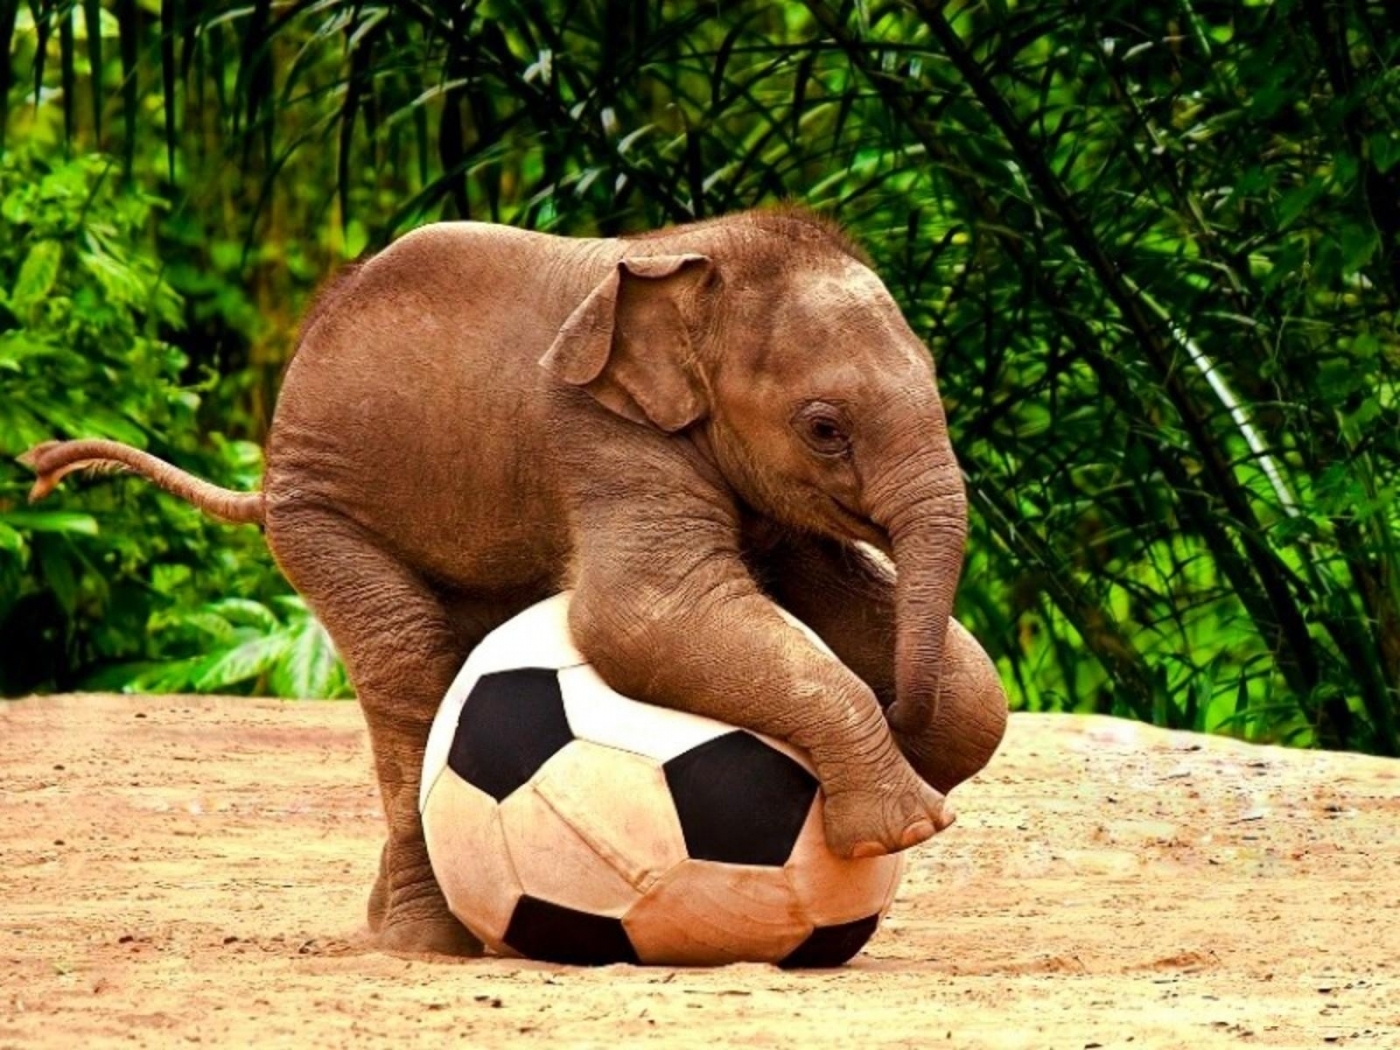 Скачать обои бесплатно Животные, Слоны, Футбол картинка на рабочий стол ПК